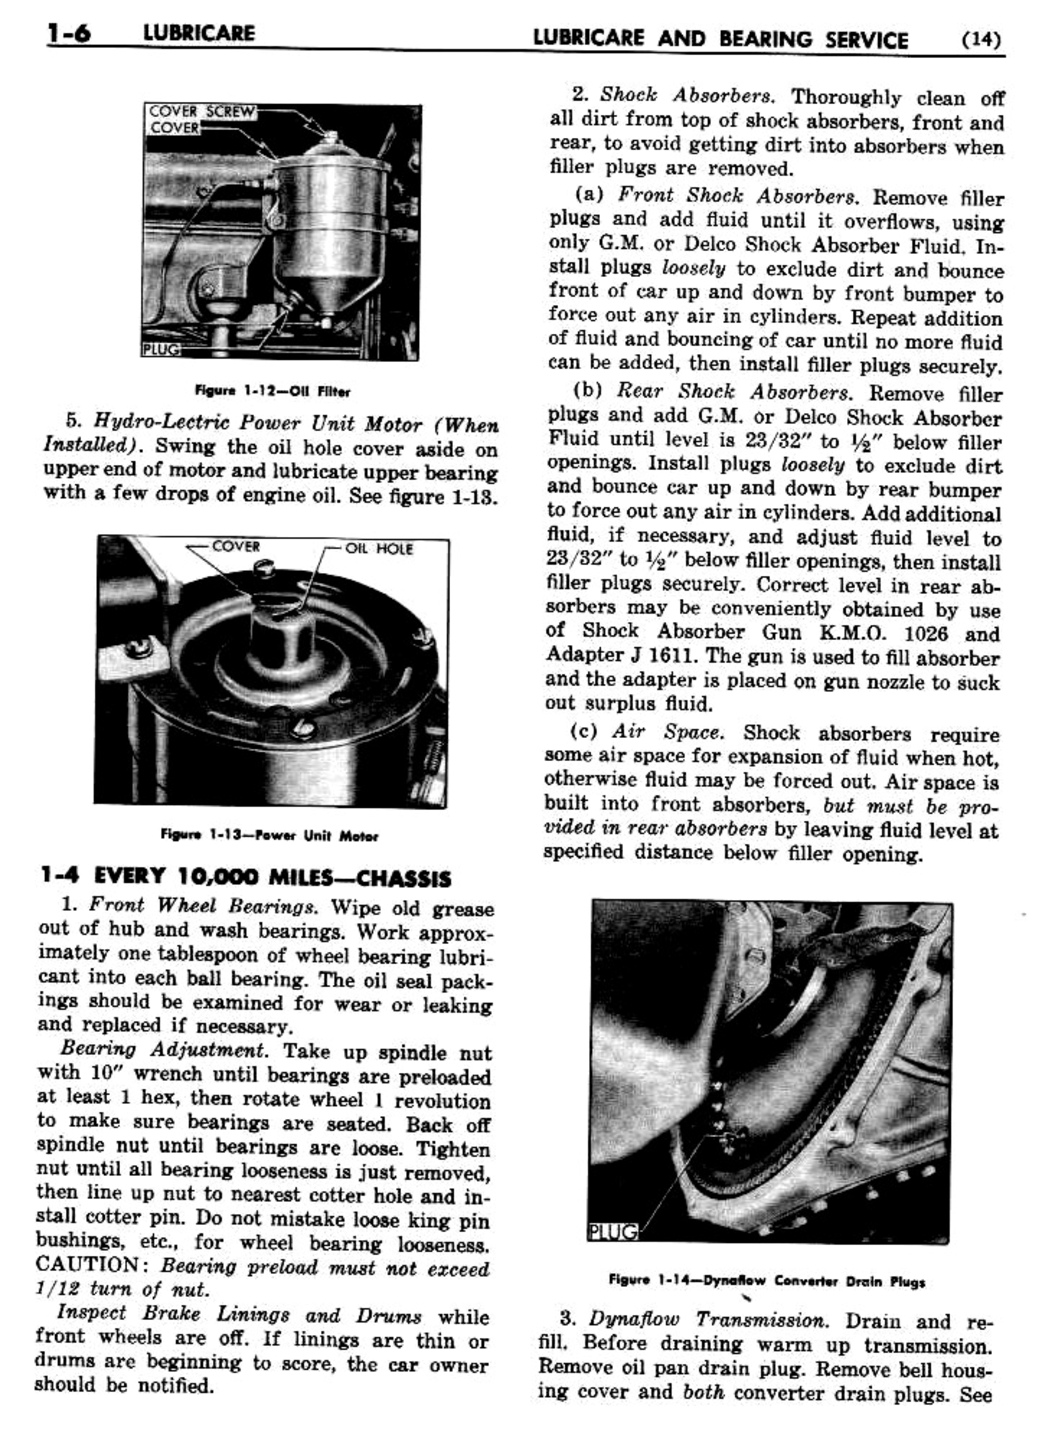 n_02 1948 Buick Shop Manual - Lubricare-006-006.jpg